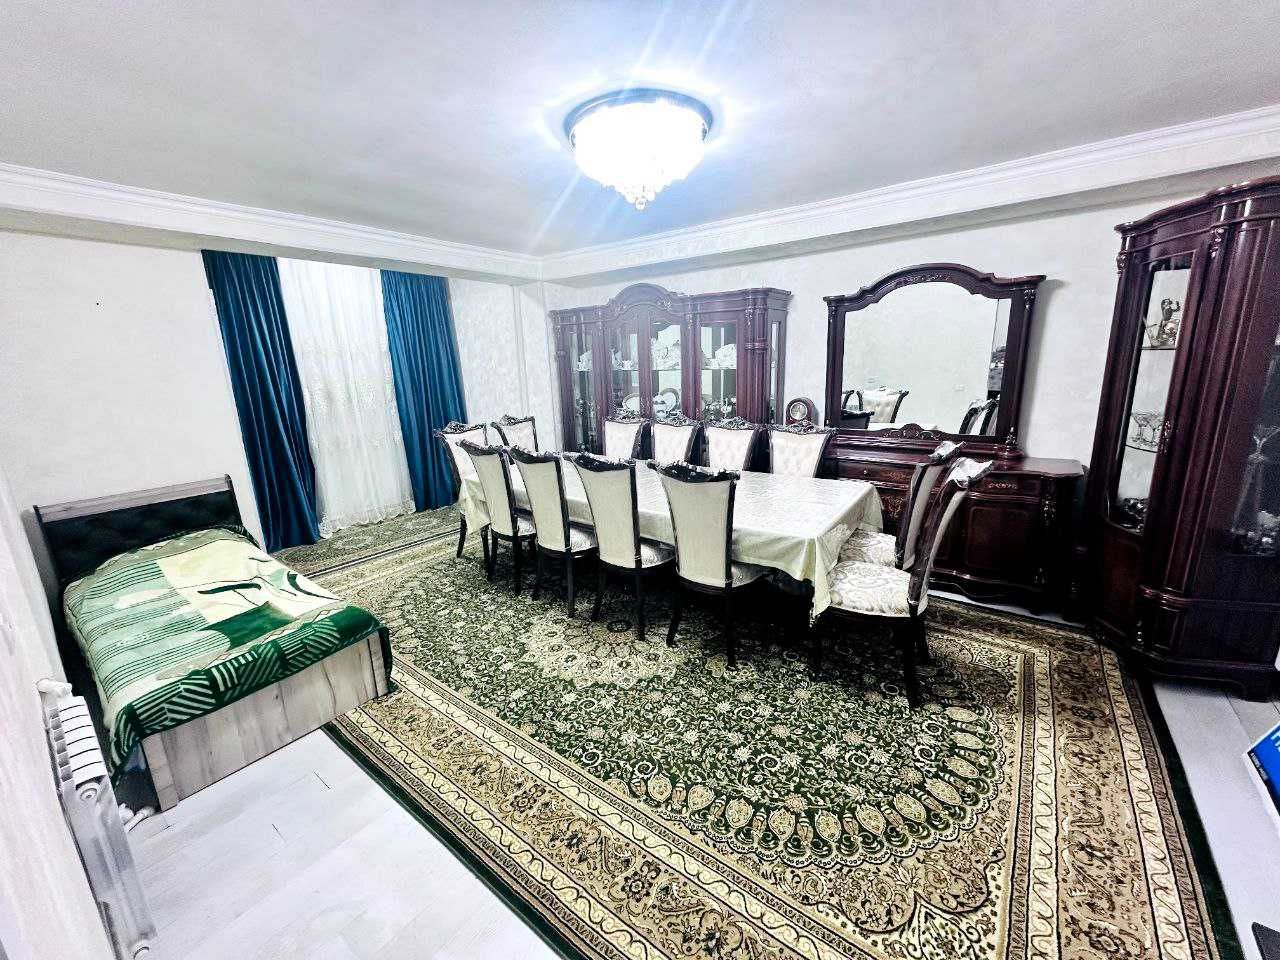 (К123509) Продается 3-х комнатная квартира в Шайхантахурском районе.